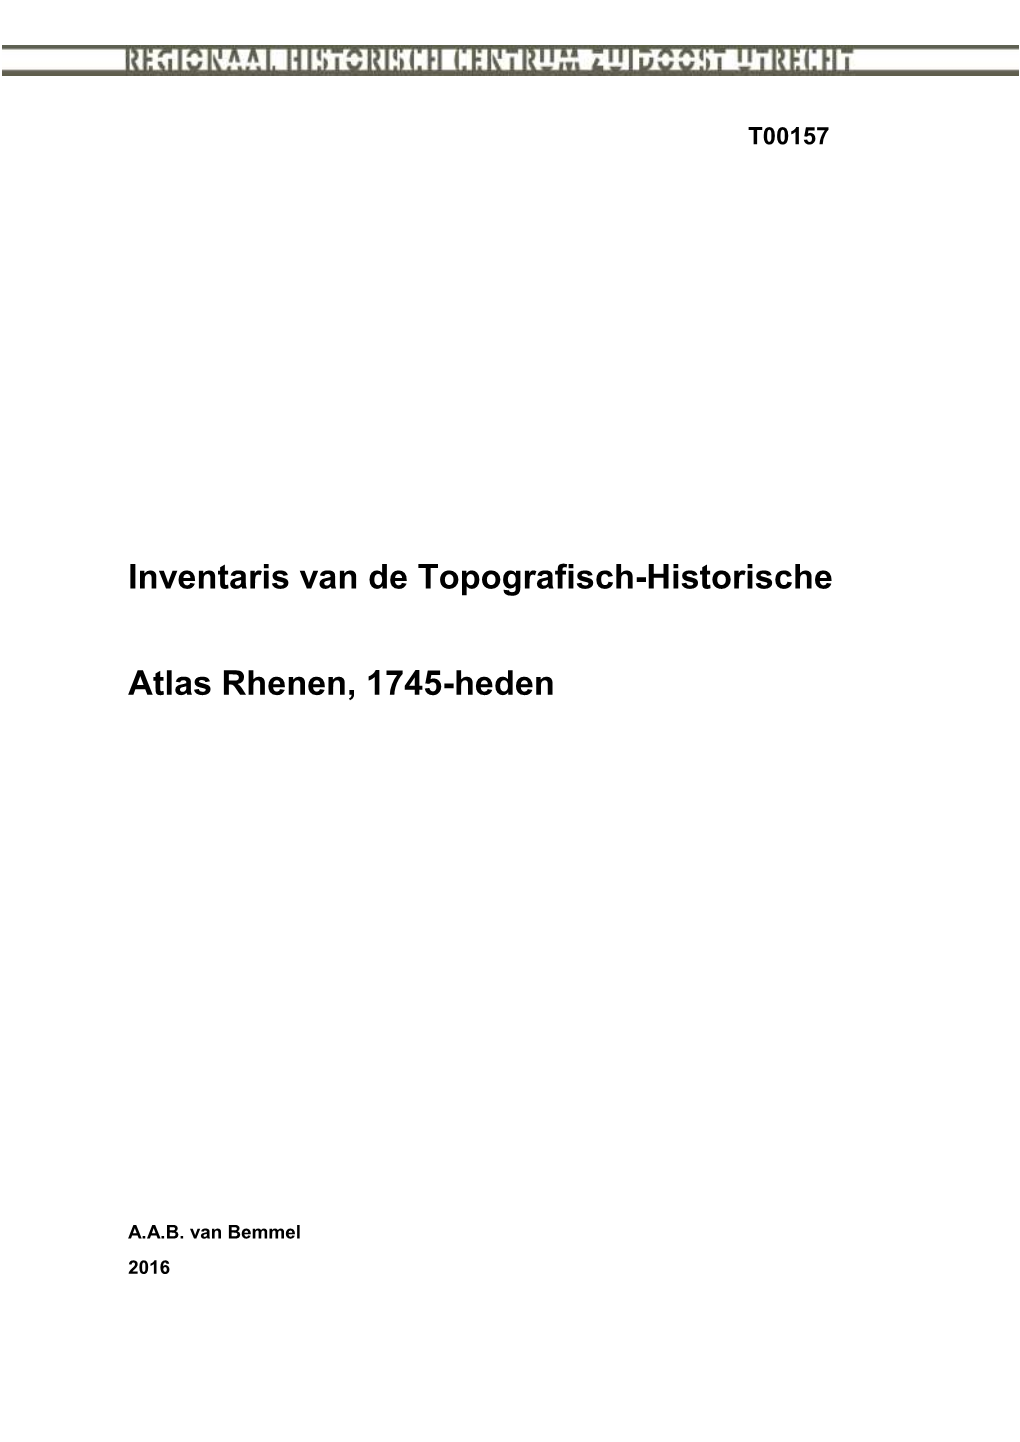 Inventaris Van De Topografisch-Historische Atlas Rhenen, 1745-Heden